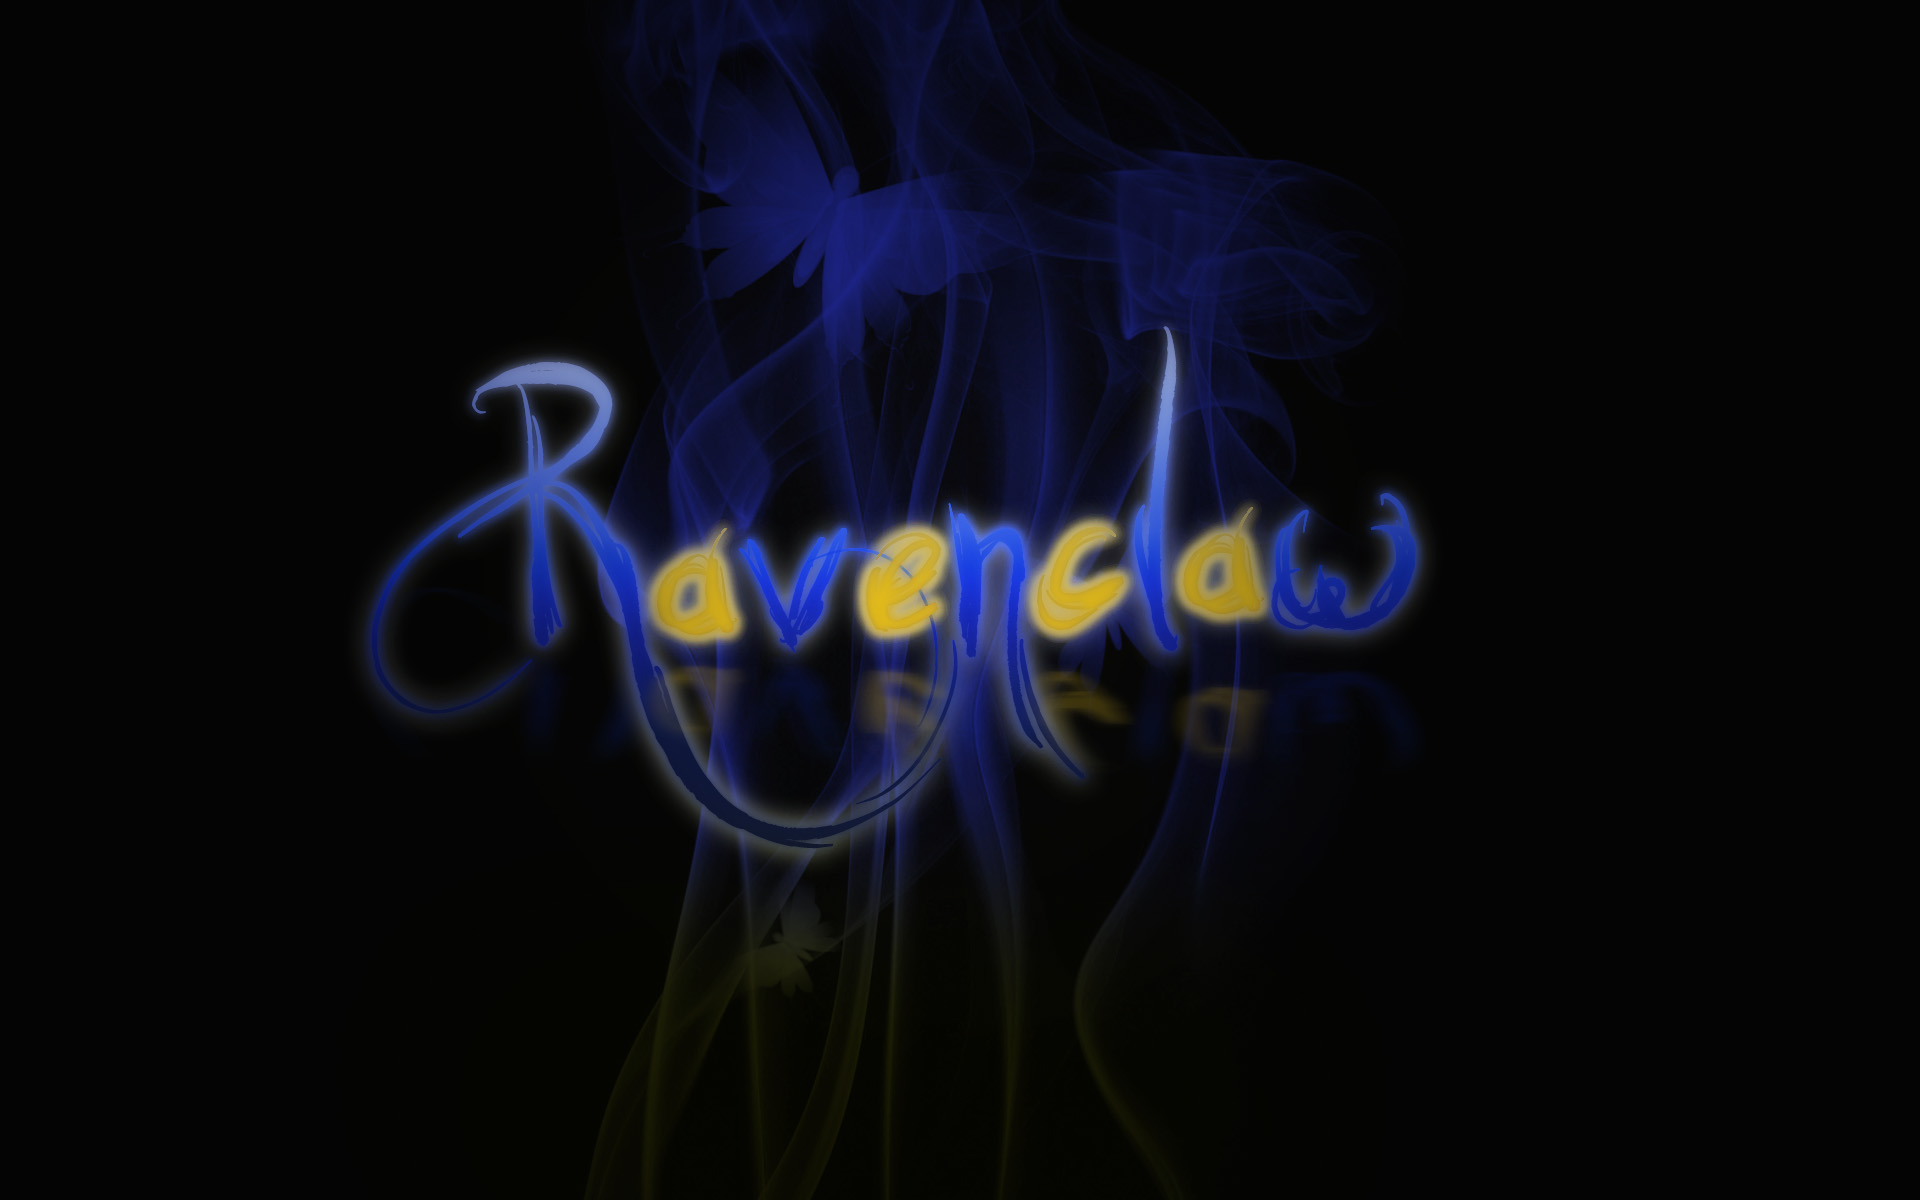 Ravenclaw Wallpaper By Globalparody